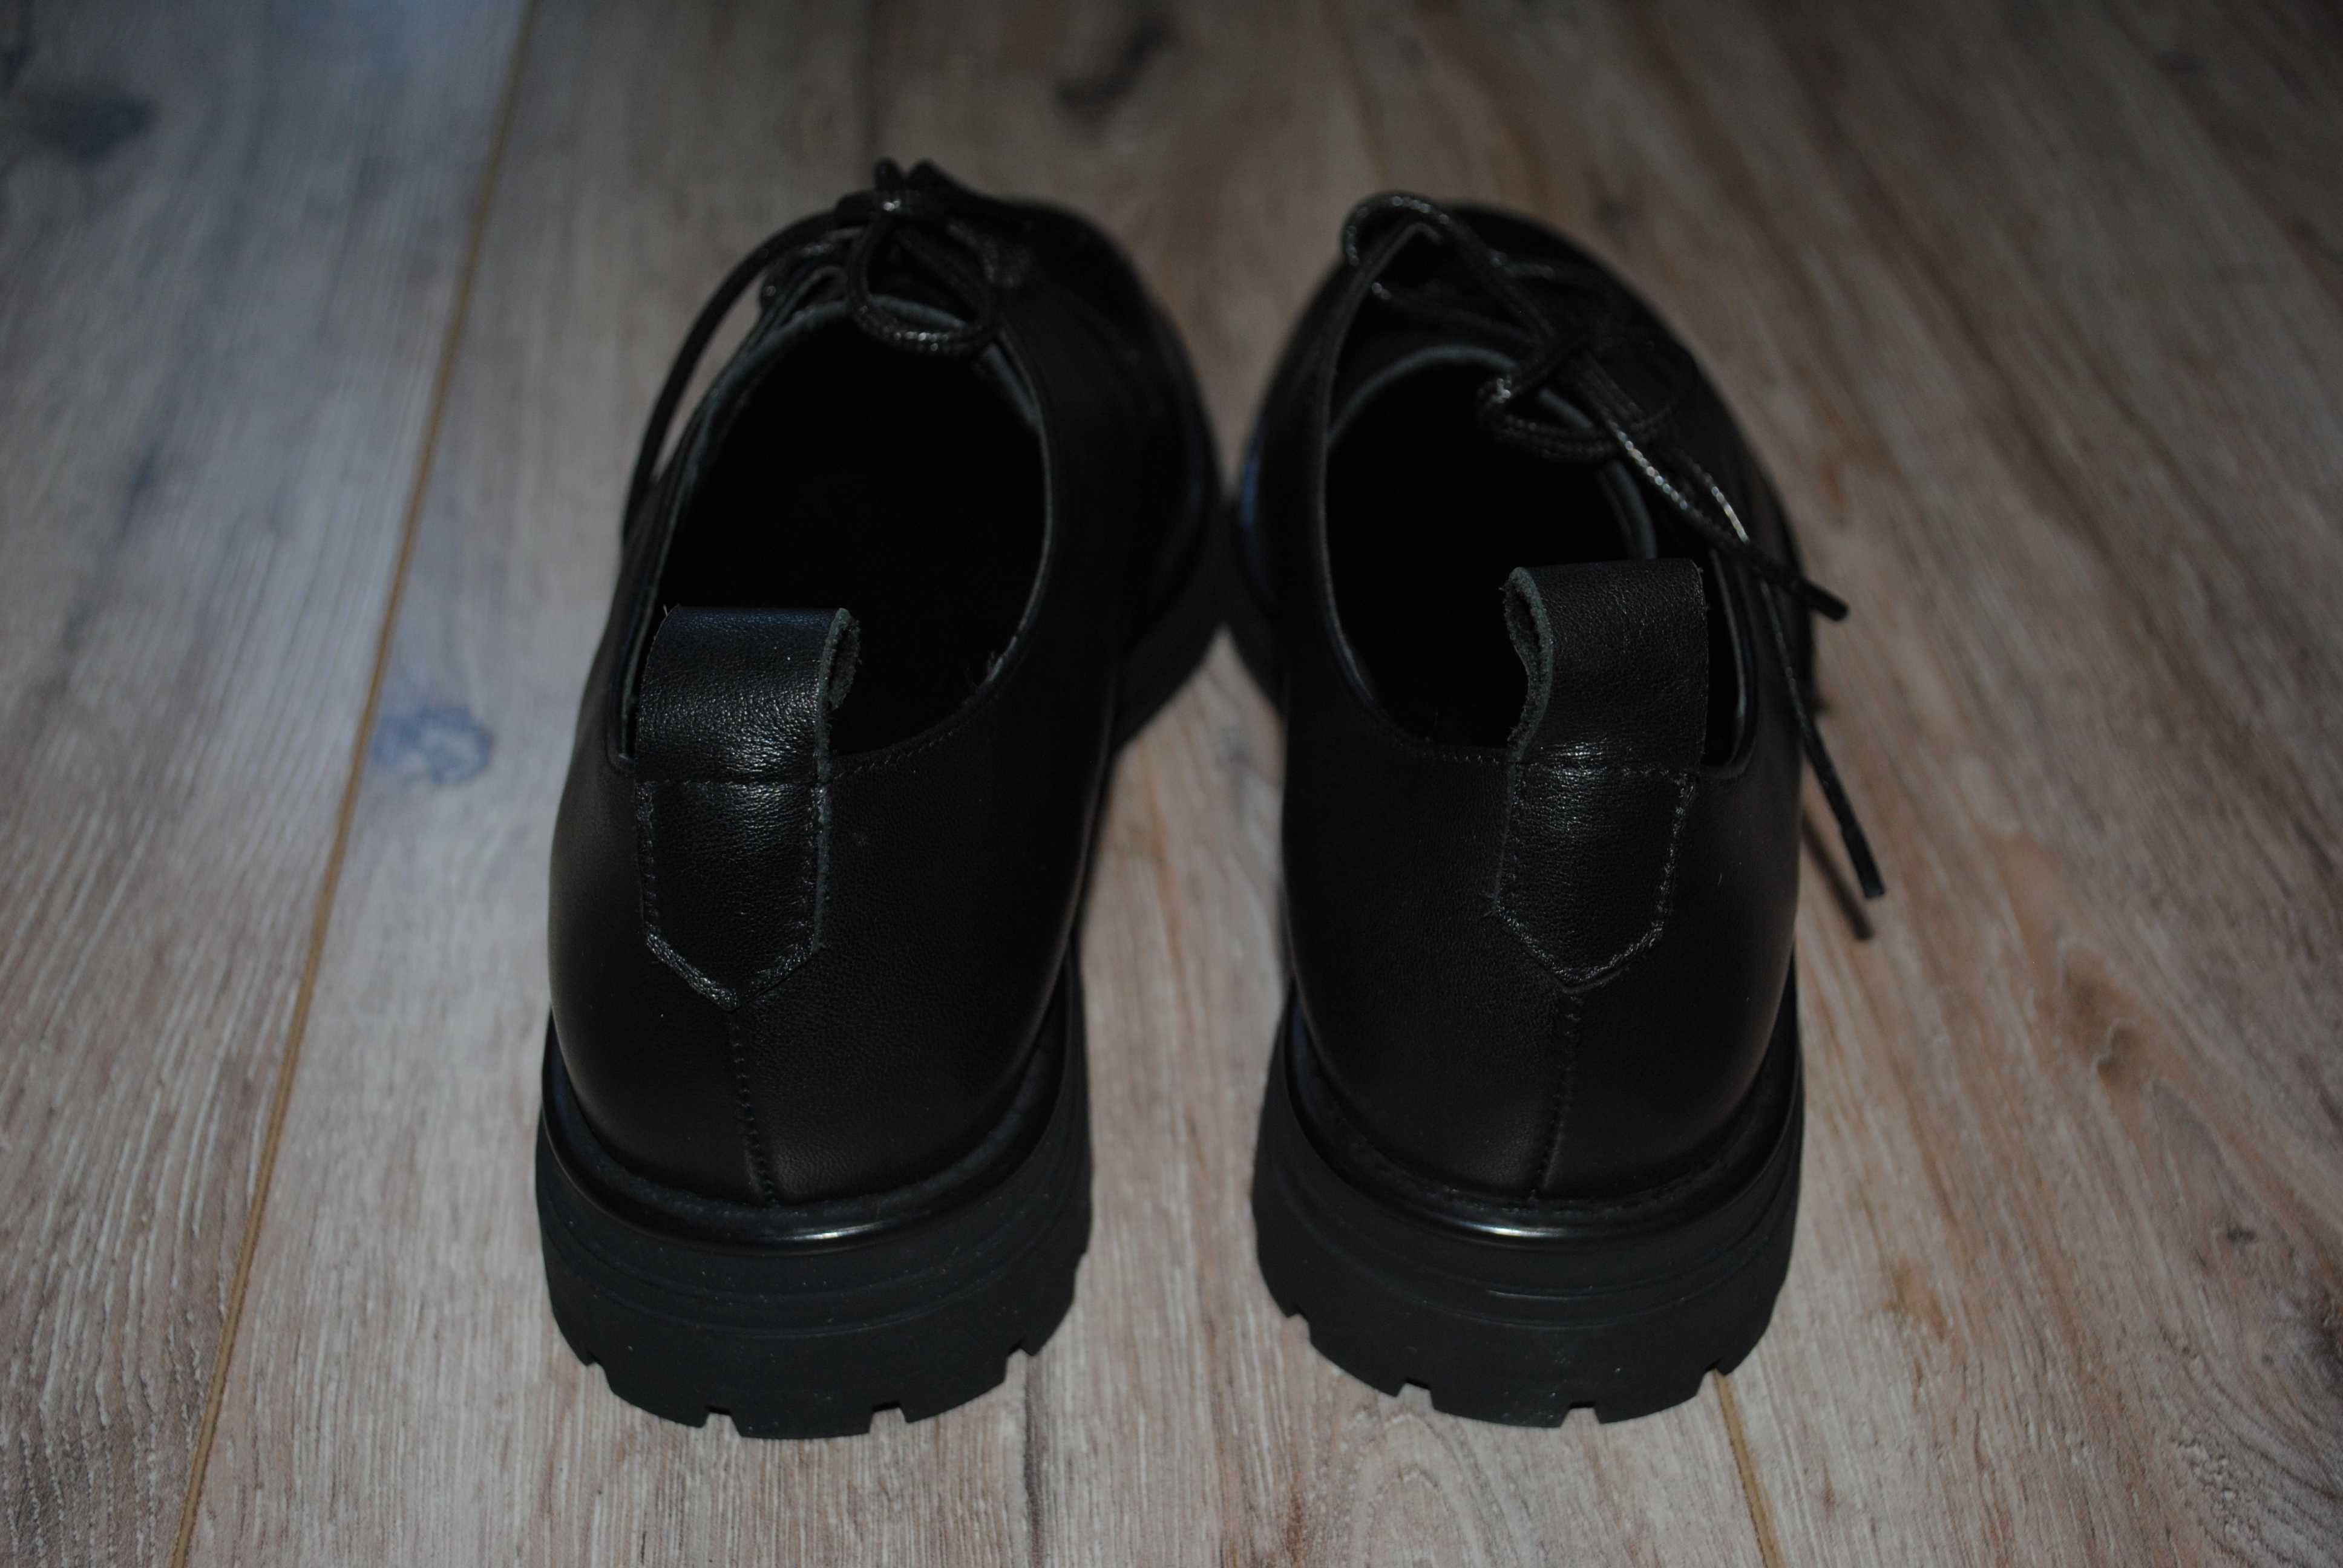 Vitto Rossi демісезонні жіночі чорні туфлі 39 р нові нат шкіра .